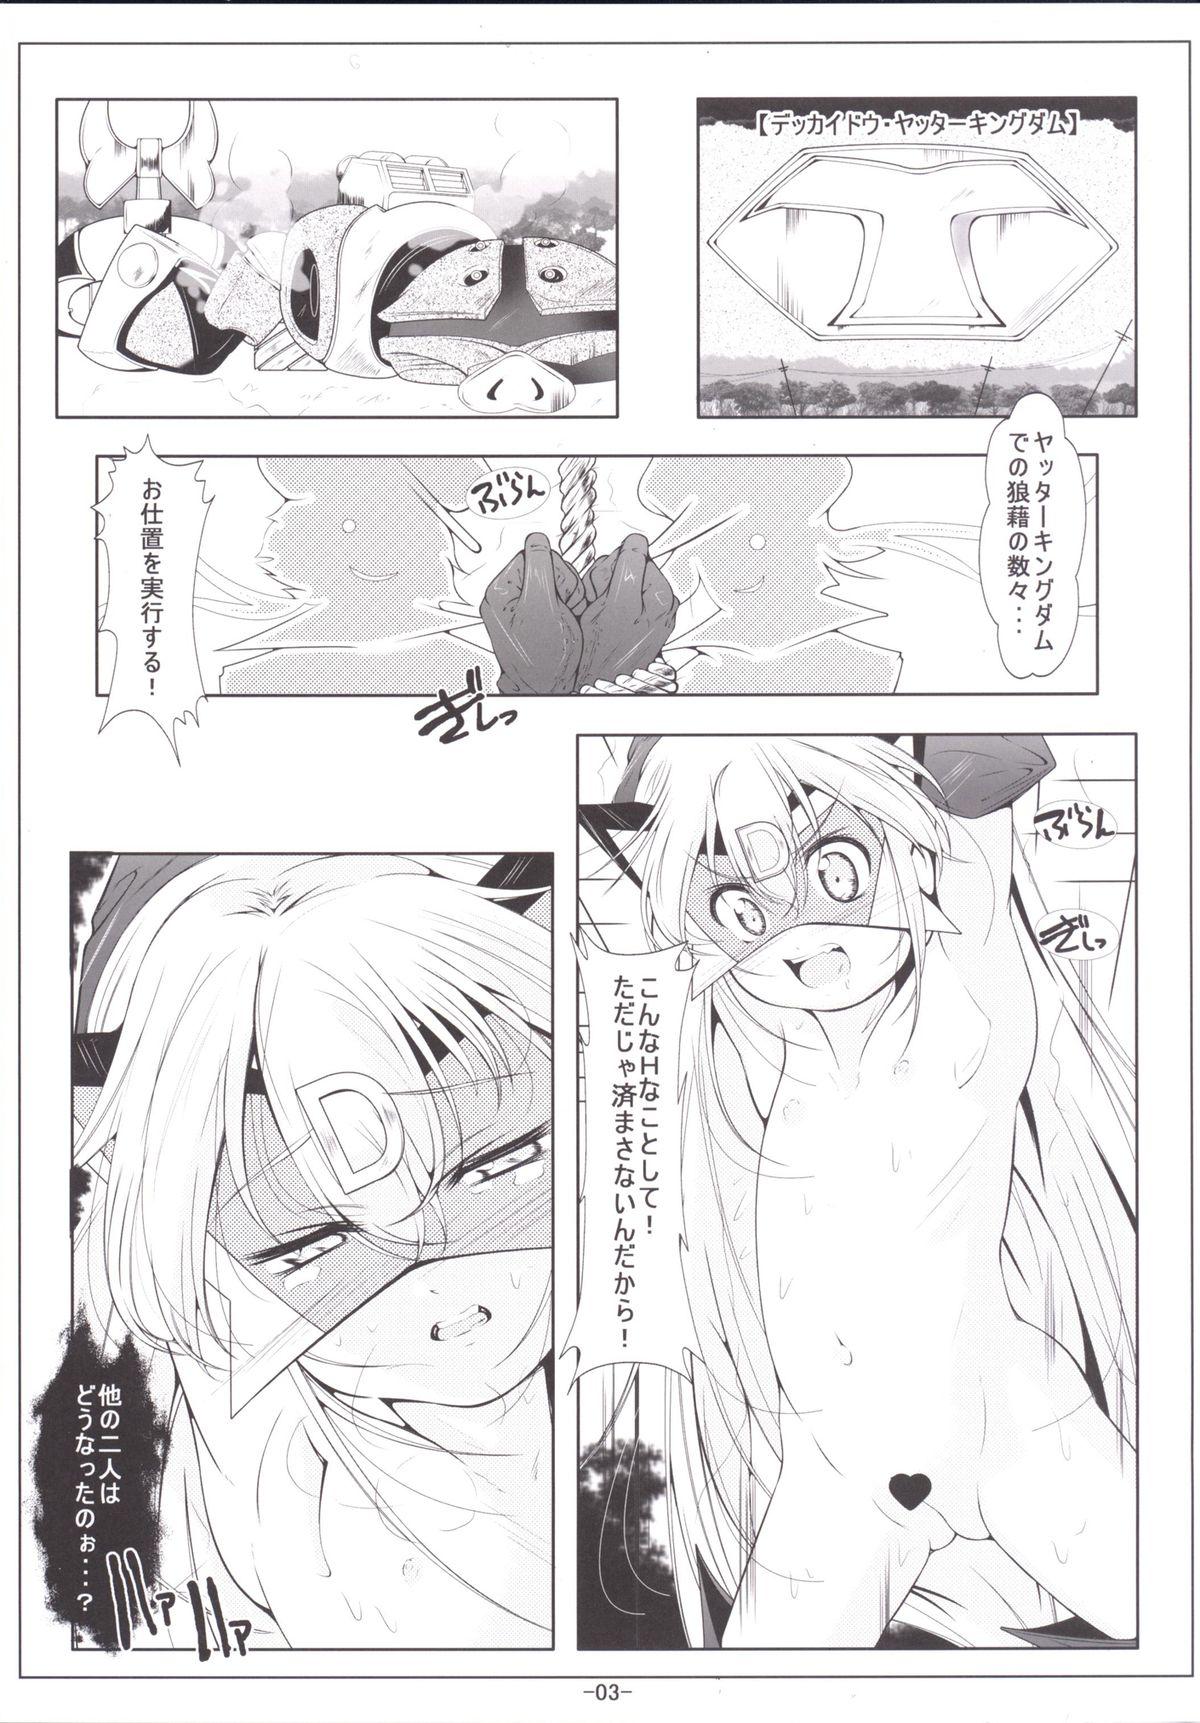 Tats Leopard-chan Oshiri no Ana de Yoru no Oshigoto - Yoru no yatterman Longhair - Page 4